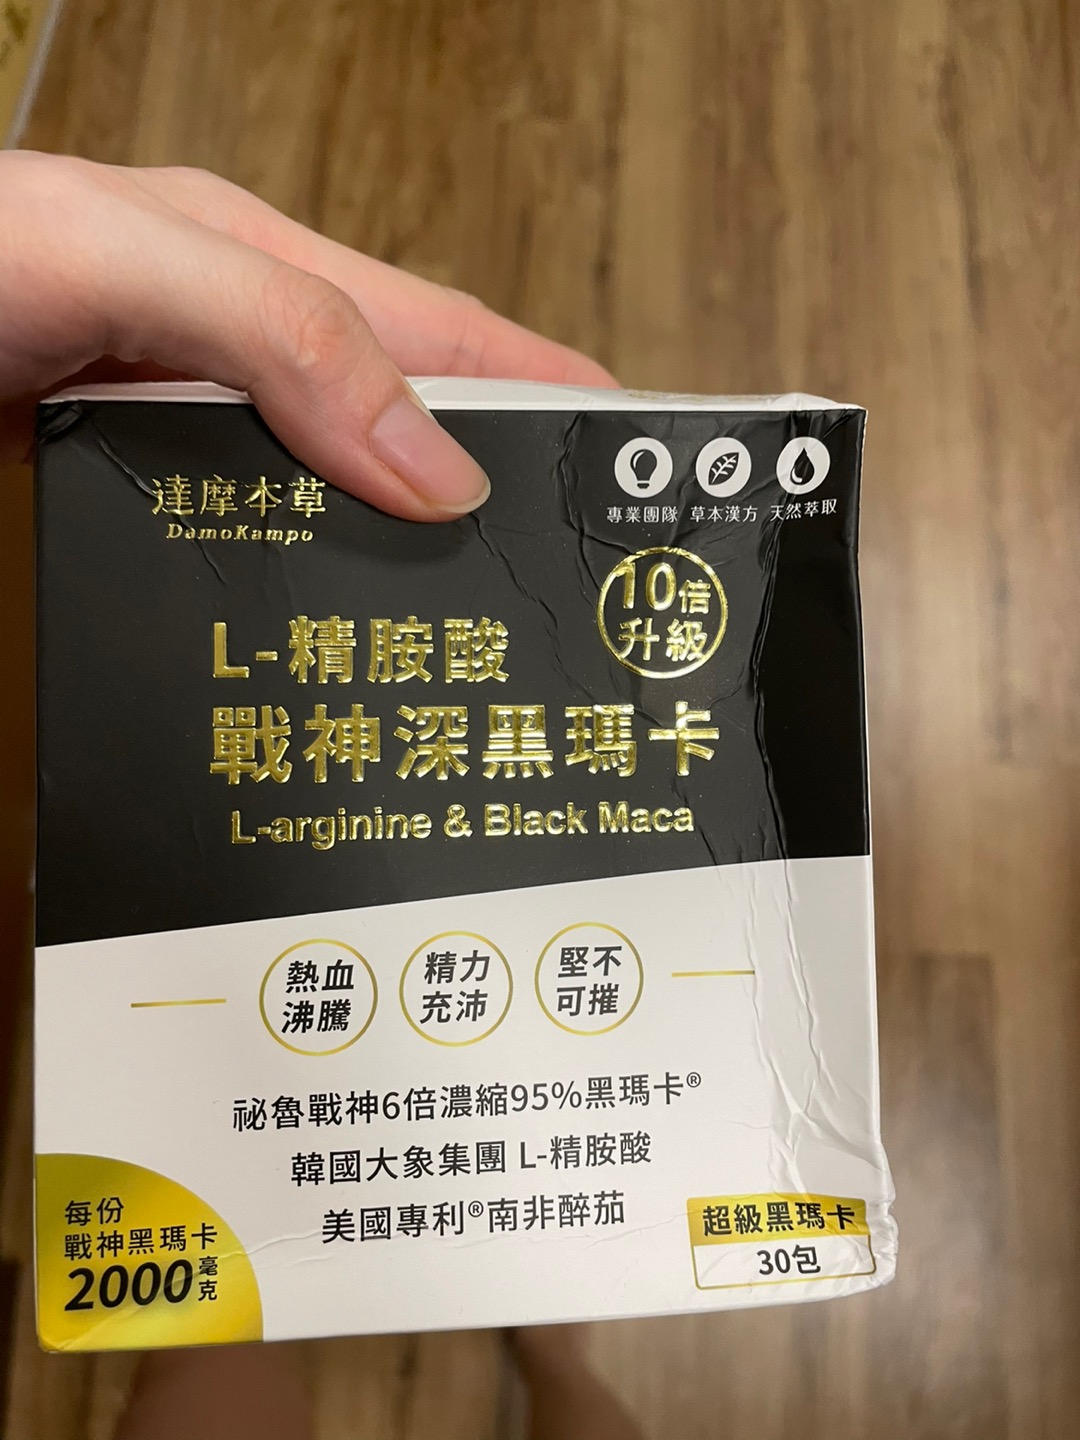 台湾 达摩本草 L 精胺酸戰神深黑瑪卡 Black Maca 男性保健食品 第3代升級版 黑玛卡现货 Shopee Malaysia